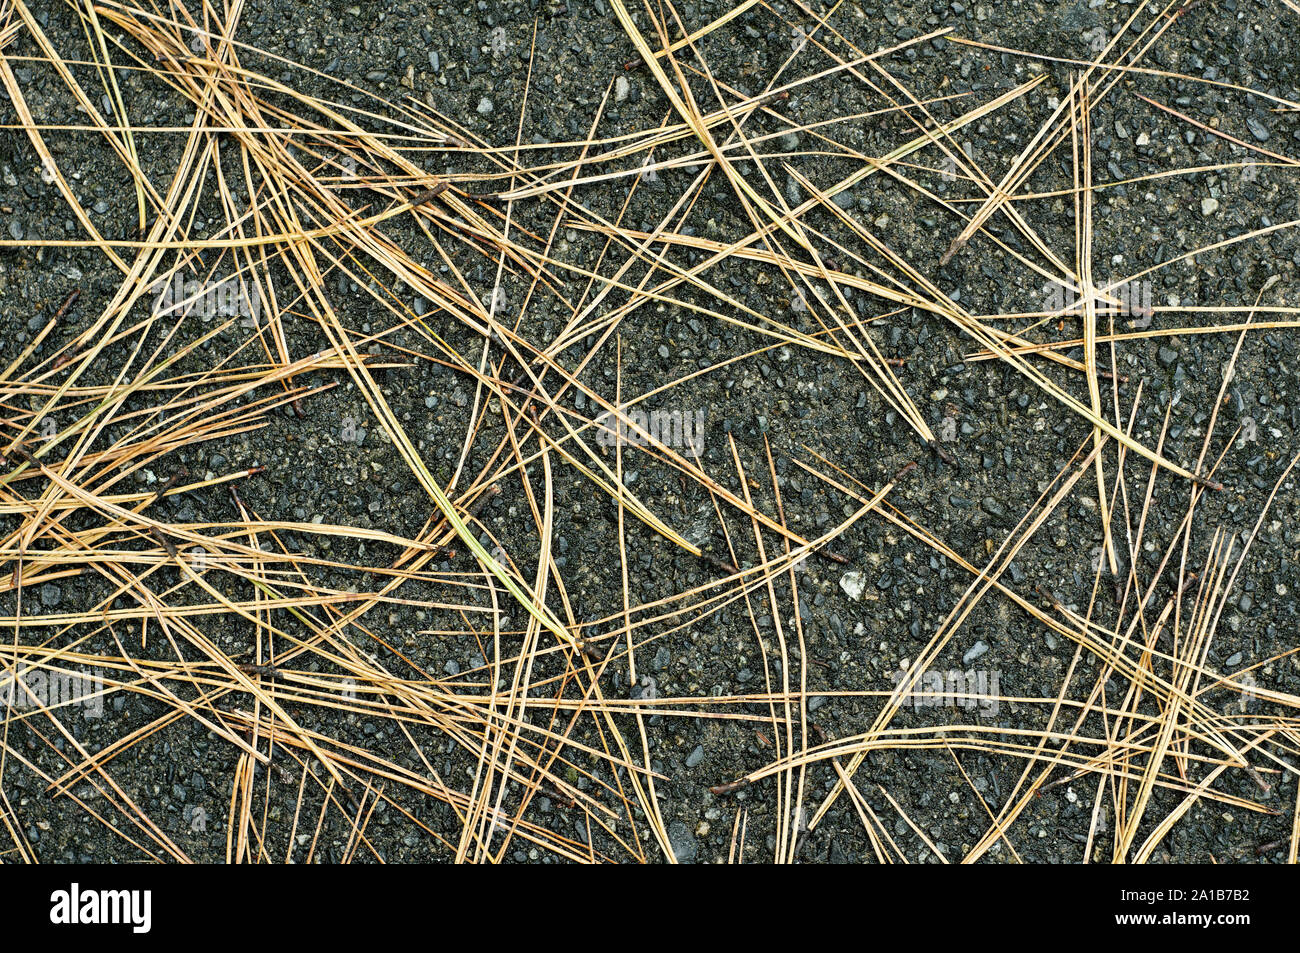 Lange braune Nadeln liegen auf dunklen Asphalt Stockfoto